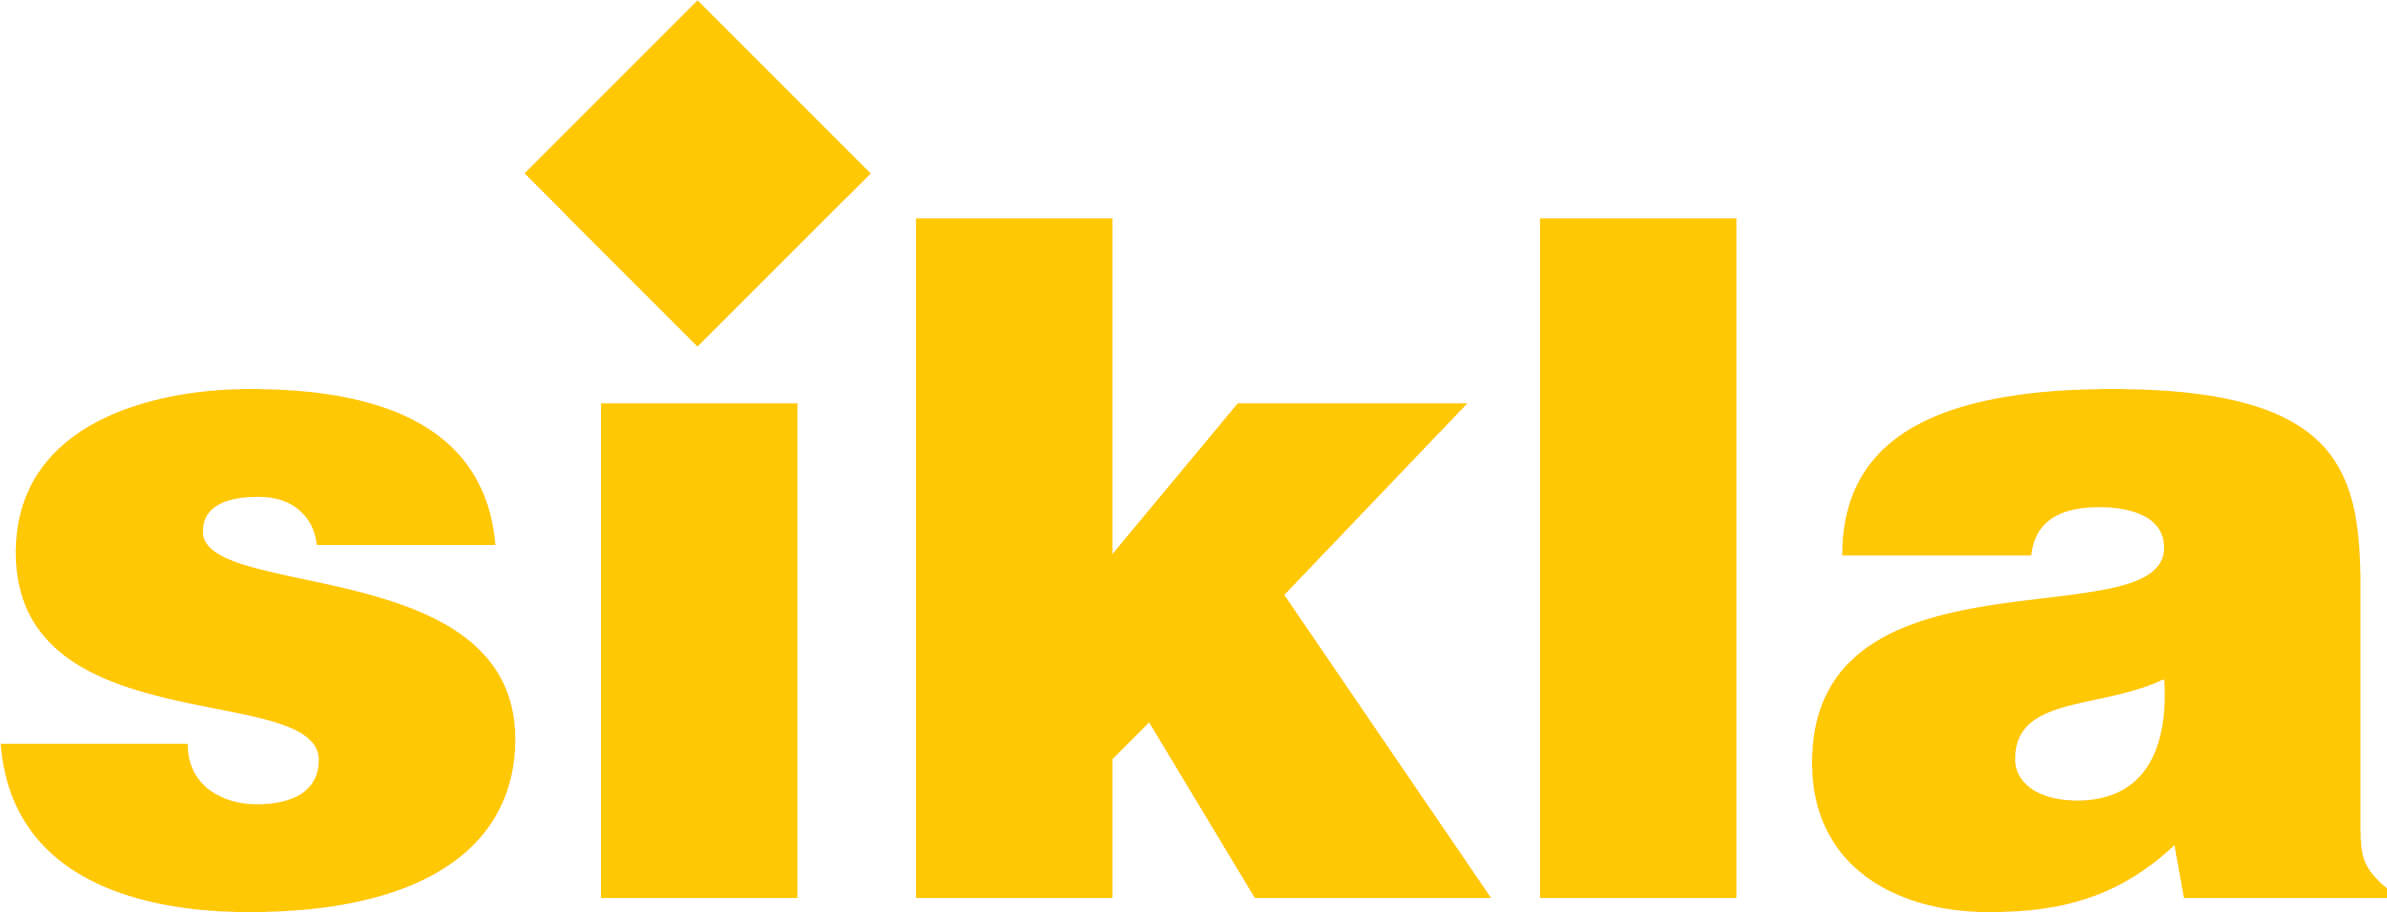 Kermi Logo